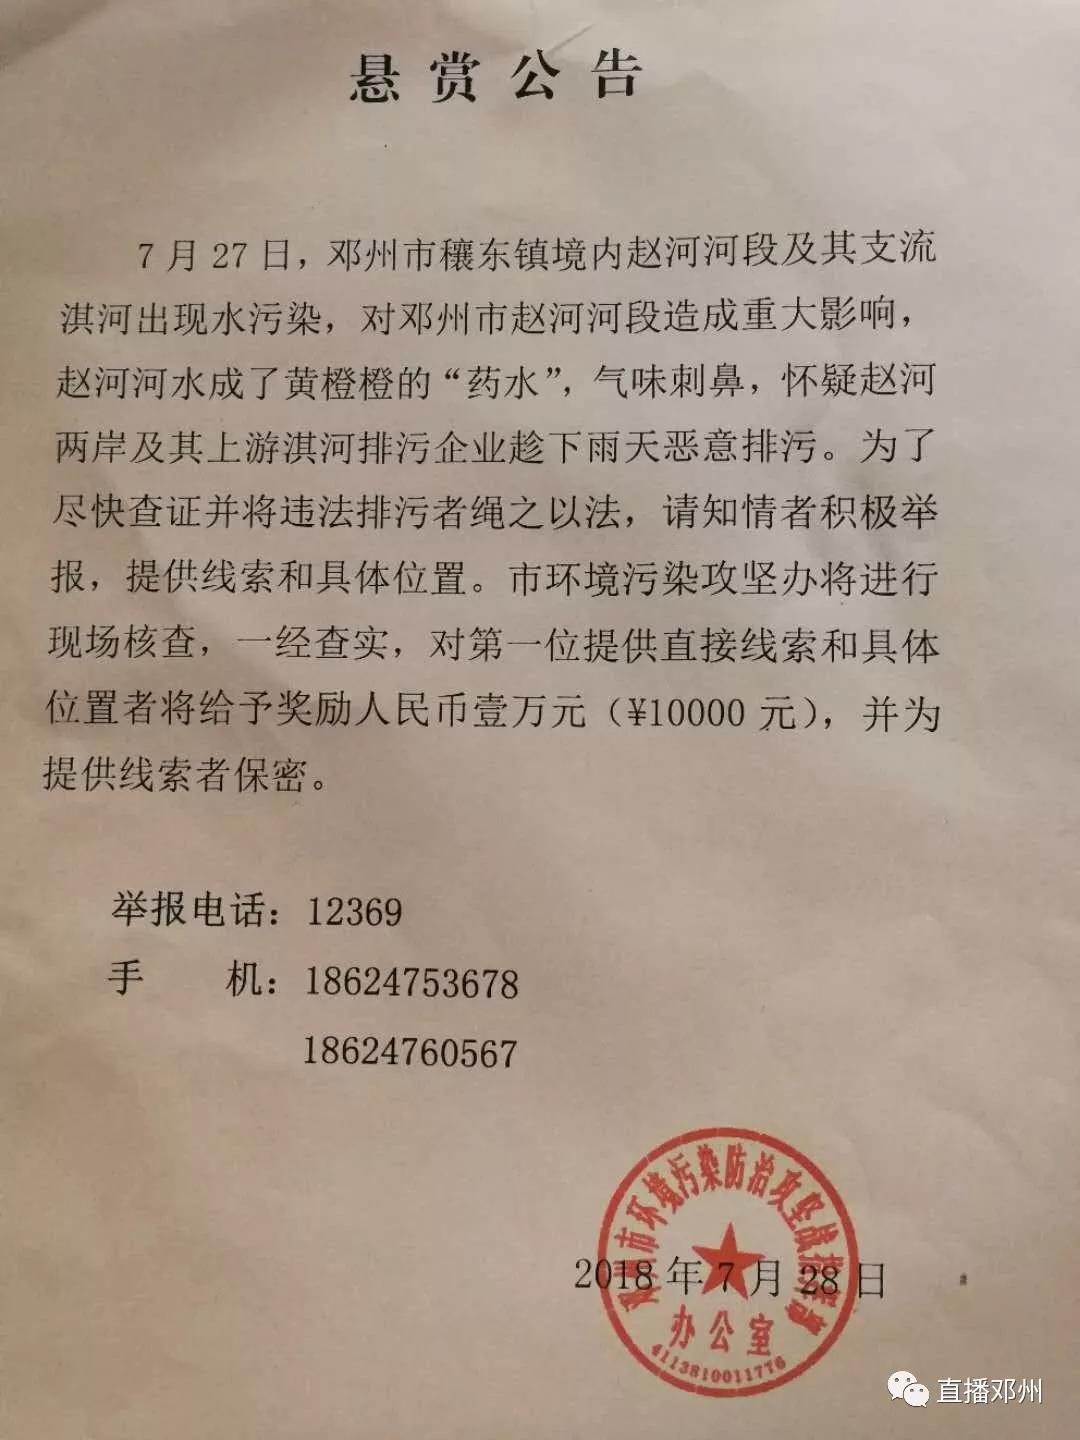 南阳赵河邓州段被污染:省环保厅连夜赶到现场